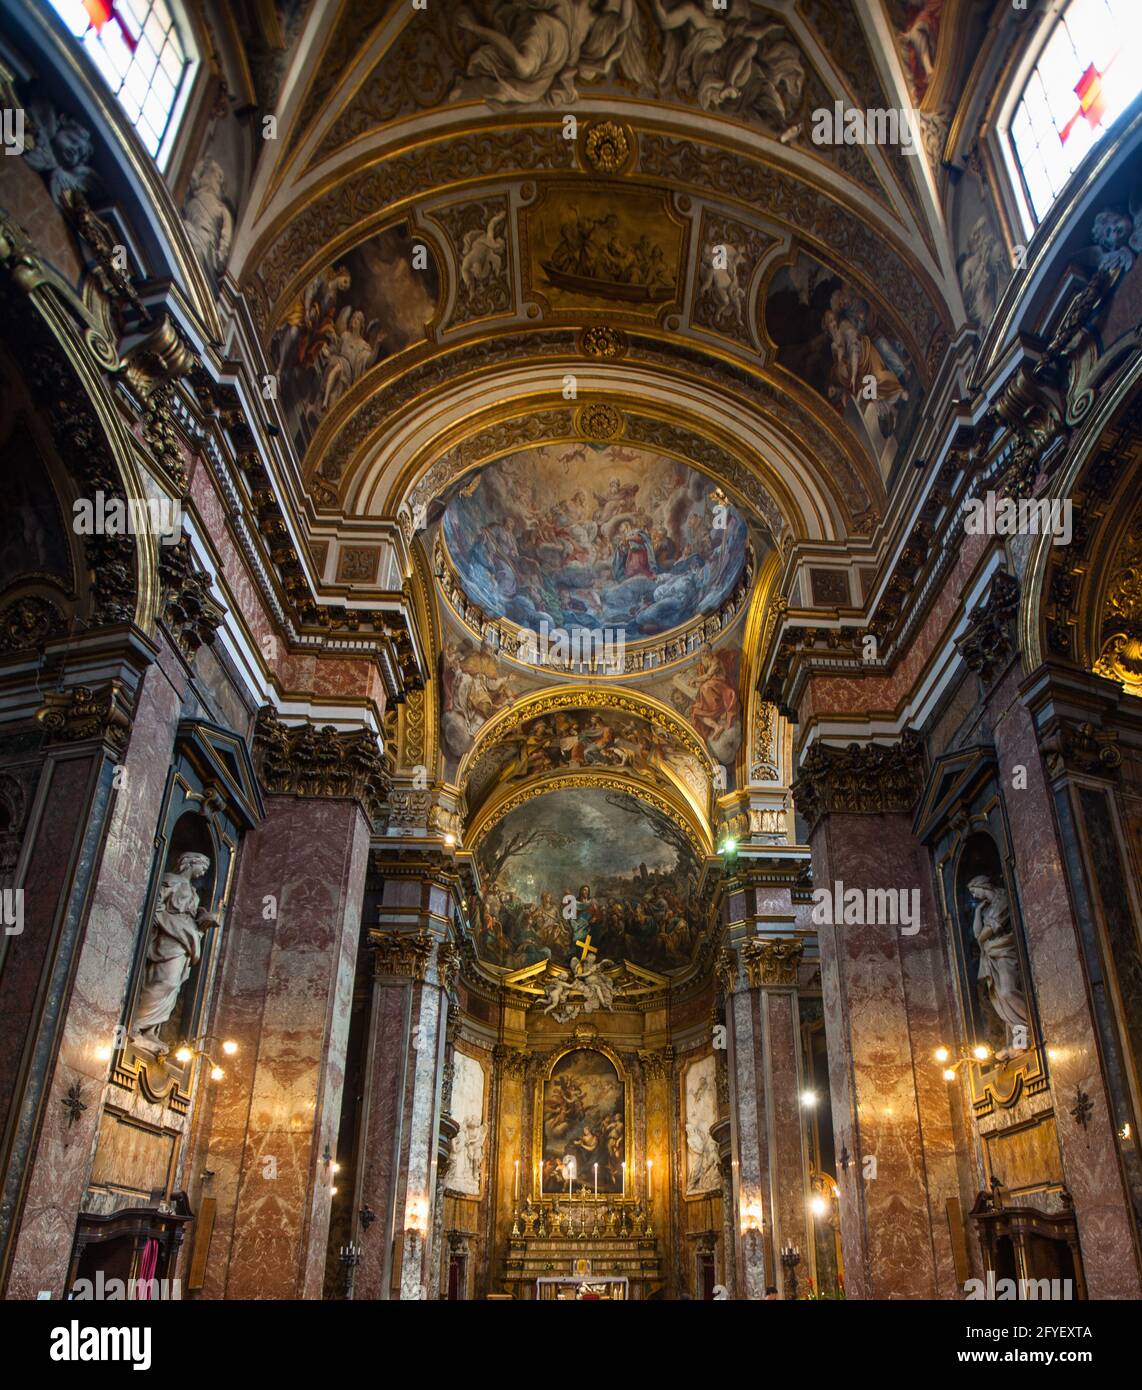 El interior de la iglesia barroca/rococó Chiese di Santa maria Maddelena en Roma, Italia, incluyendo el altar y el fresco del ábside 'Predicación de Chris Foto de stock